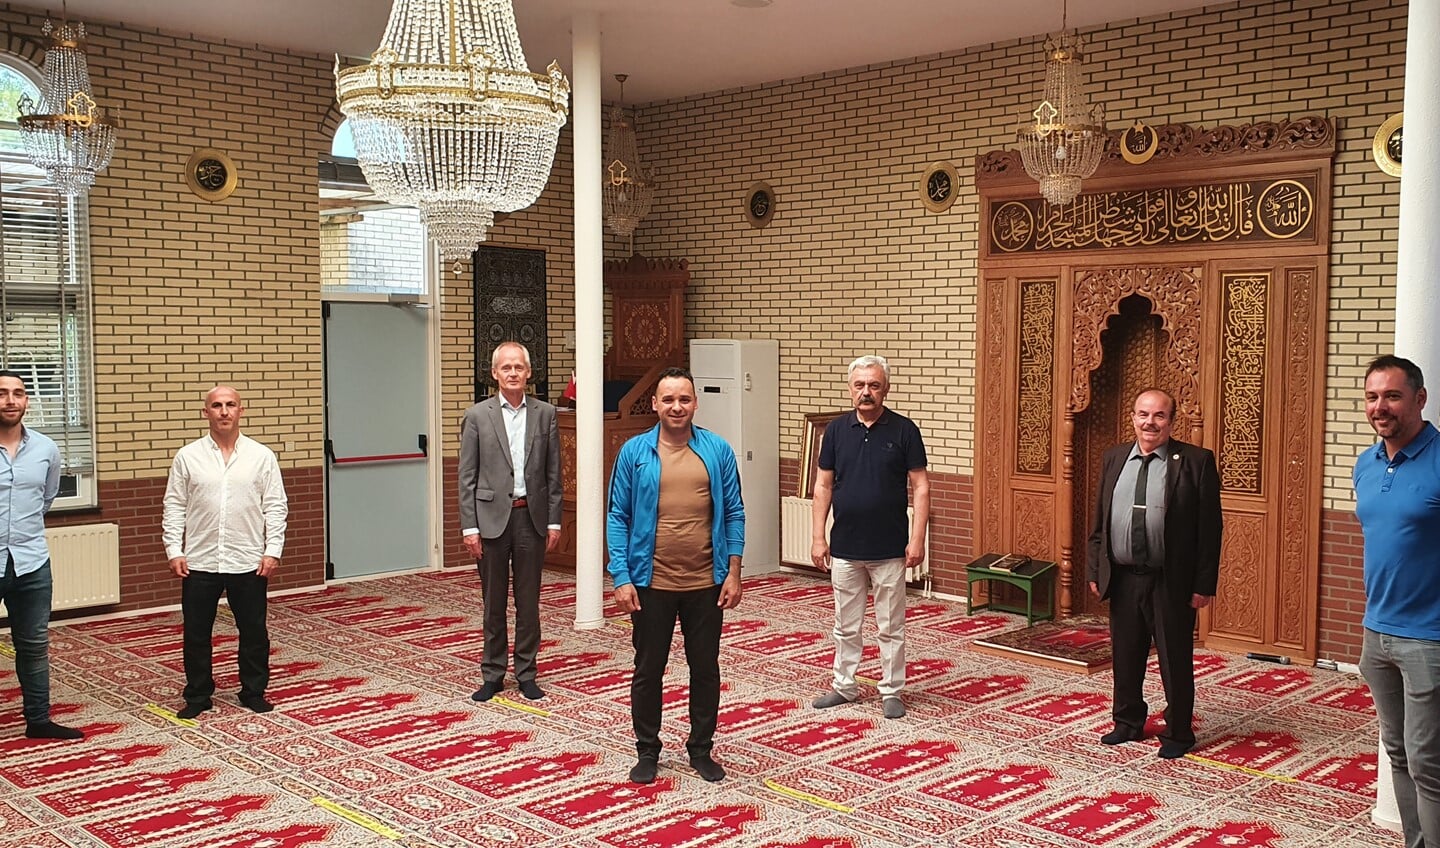 Burgemeester Niek Meijer kwam langs om te kijken hoe de coronamaatregelen in de moskee zijn toegepast.